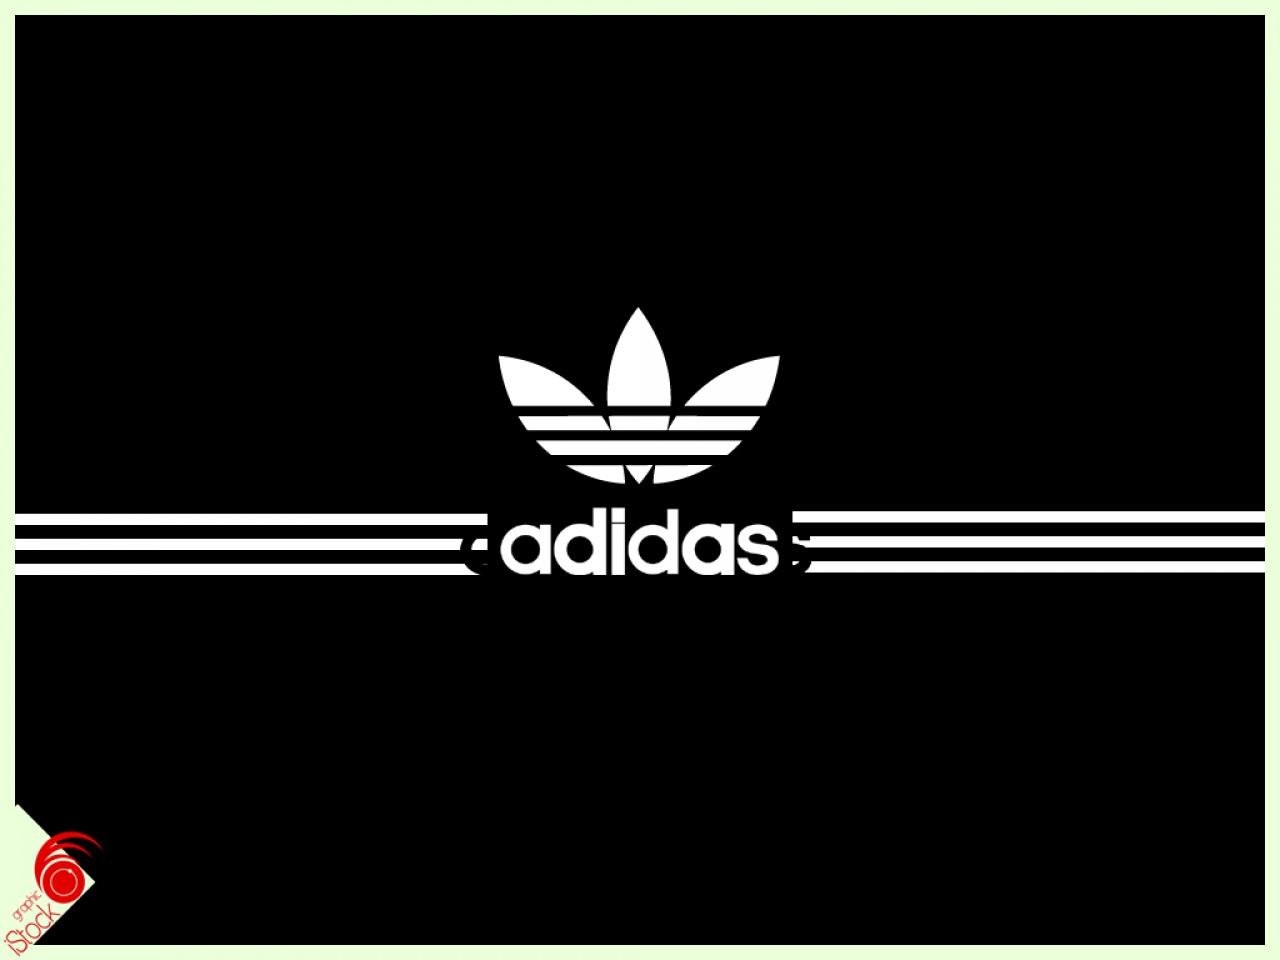 Adidas Wallpapers - Adidas - HD Wallpaper 